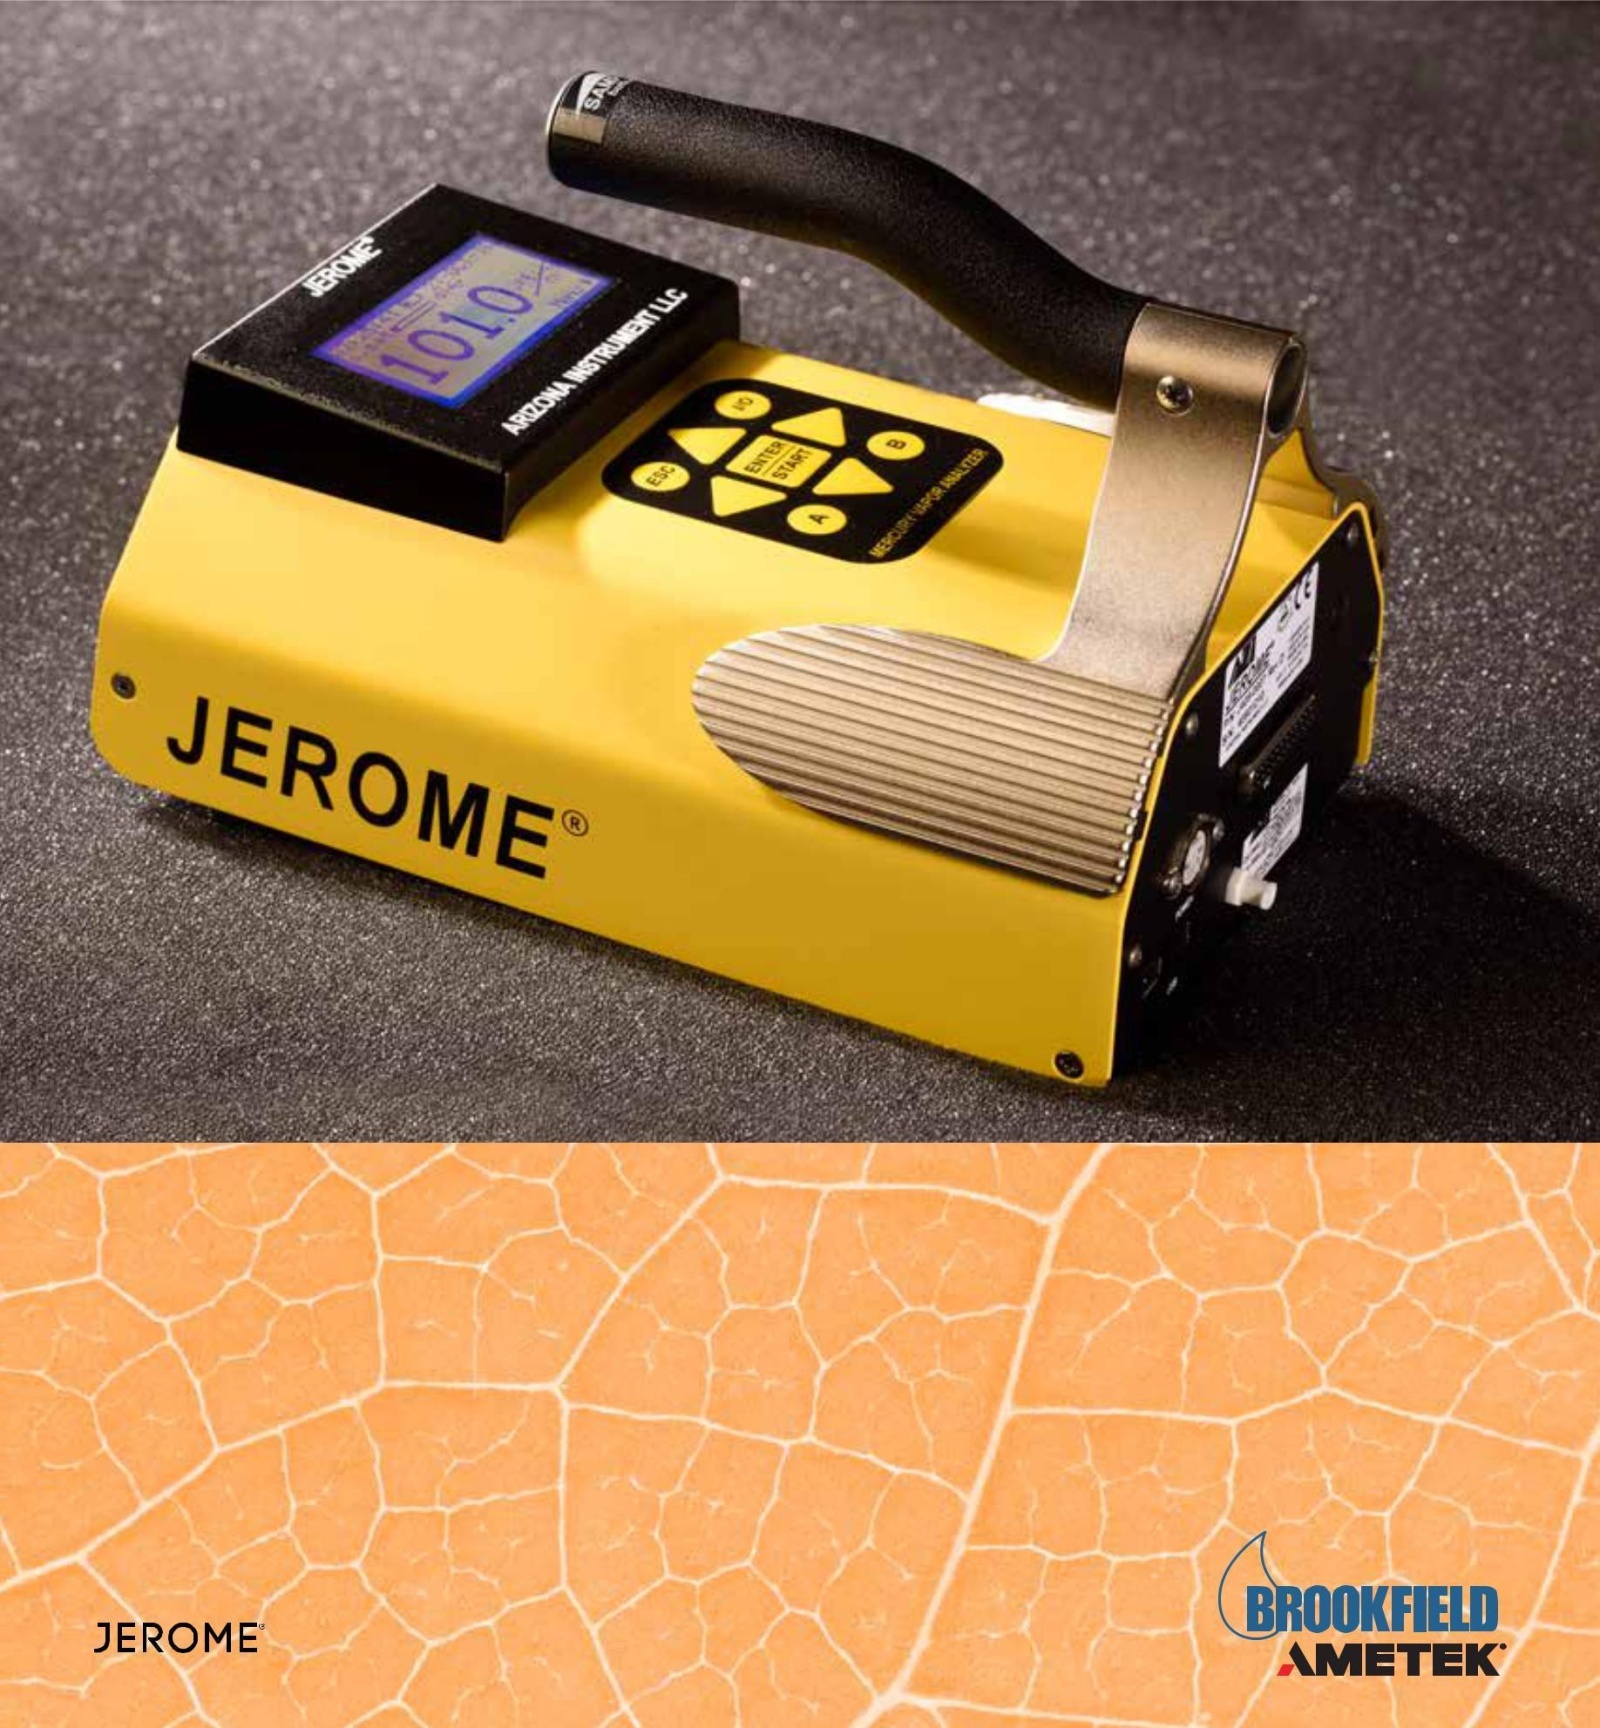 J405便携式汞蒸气分析仪的图片